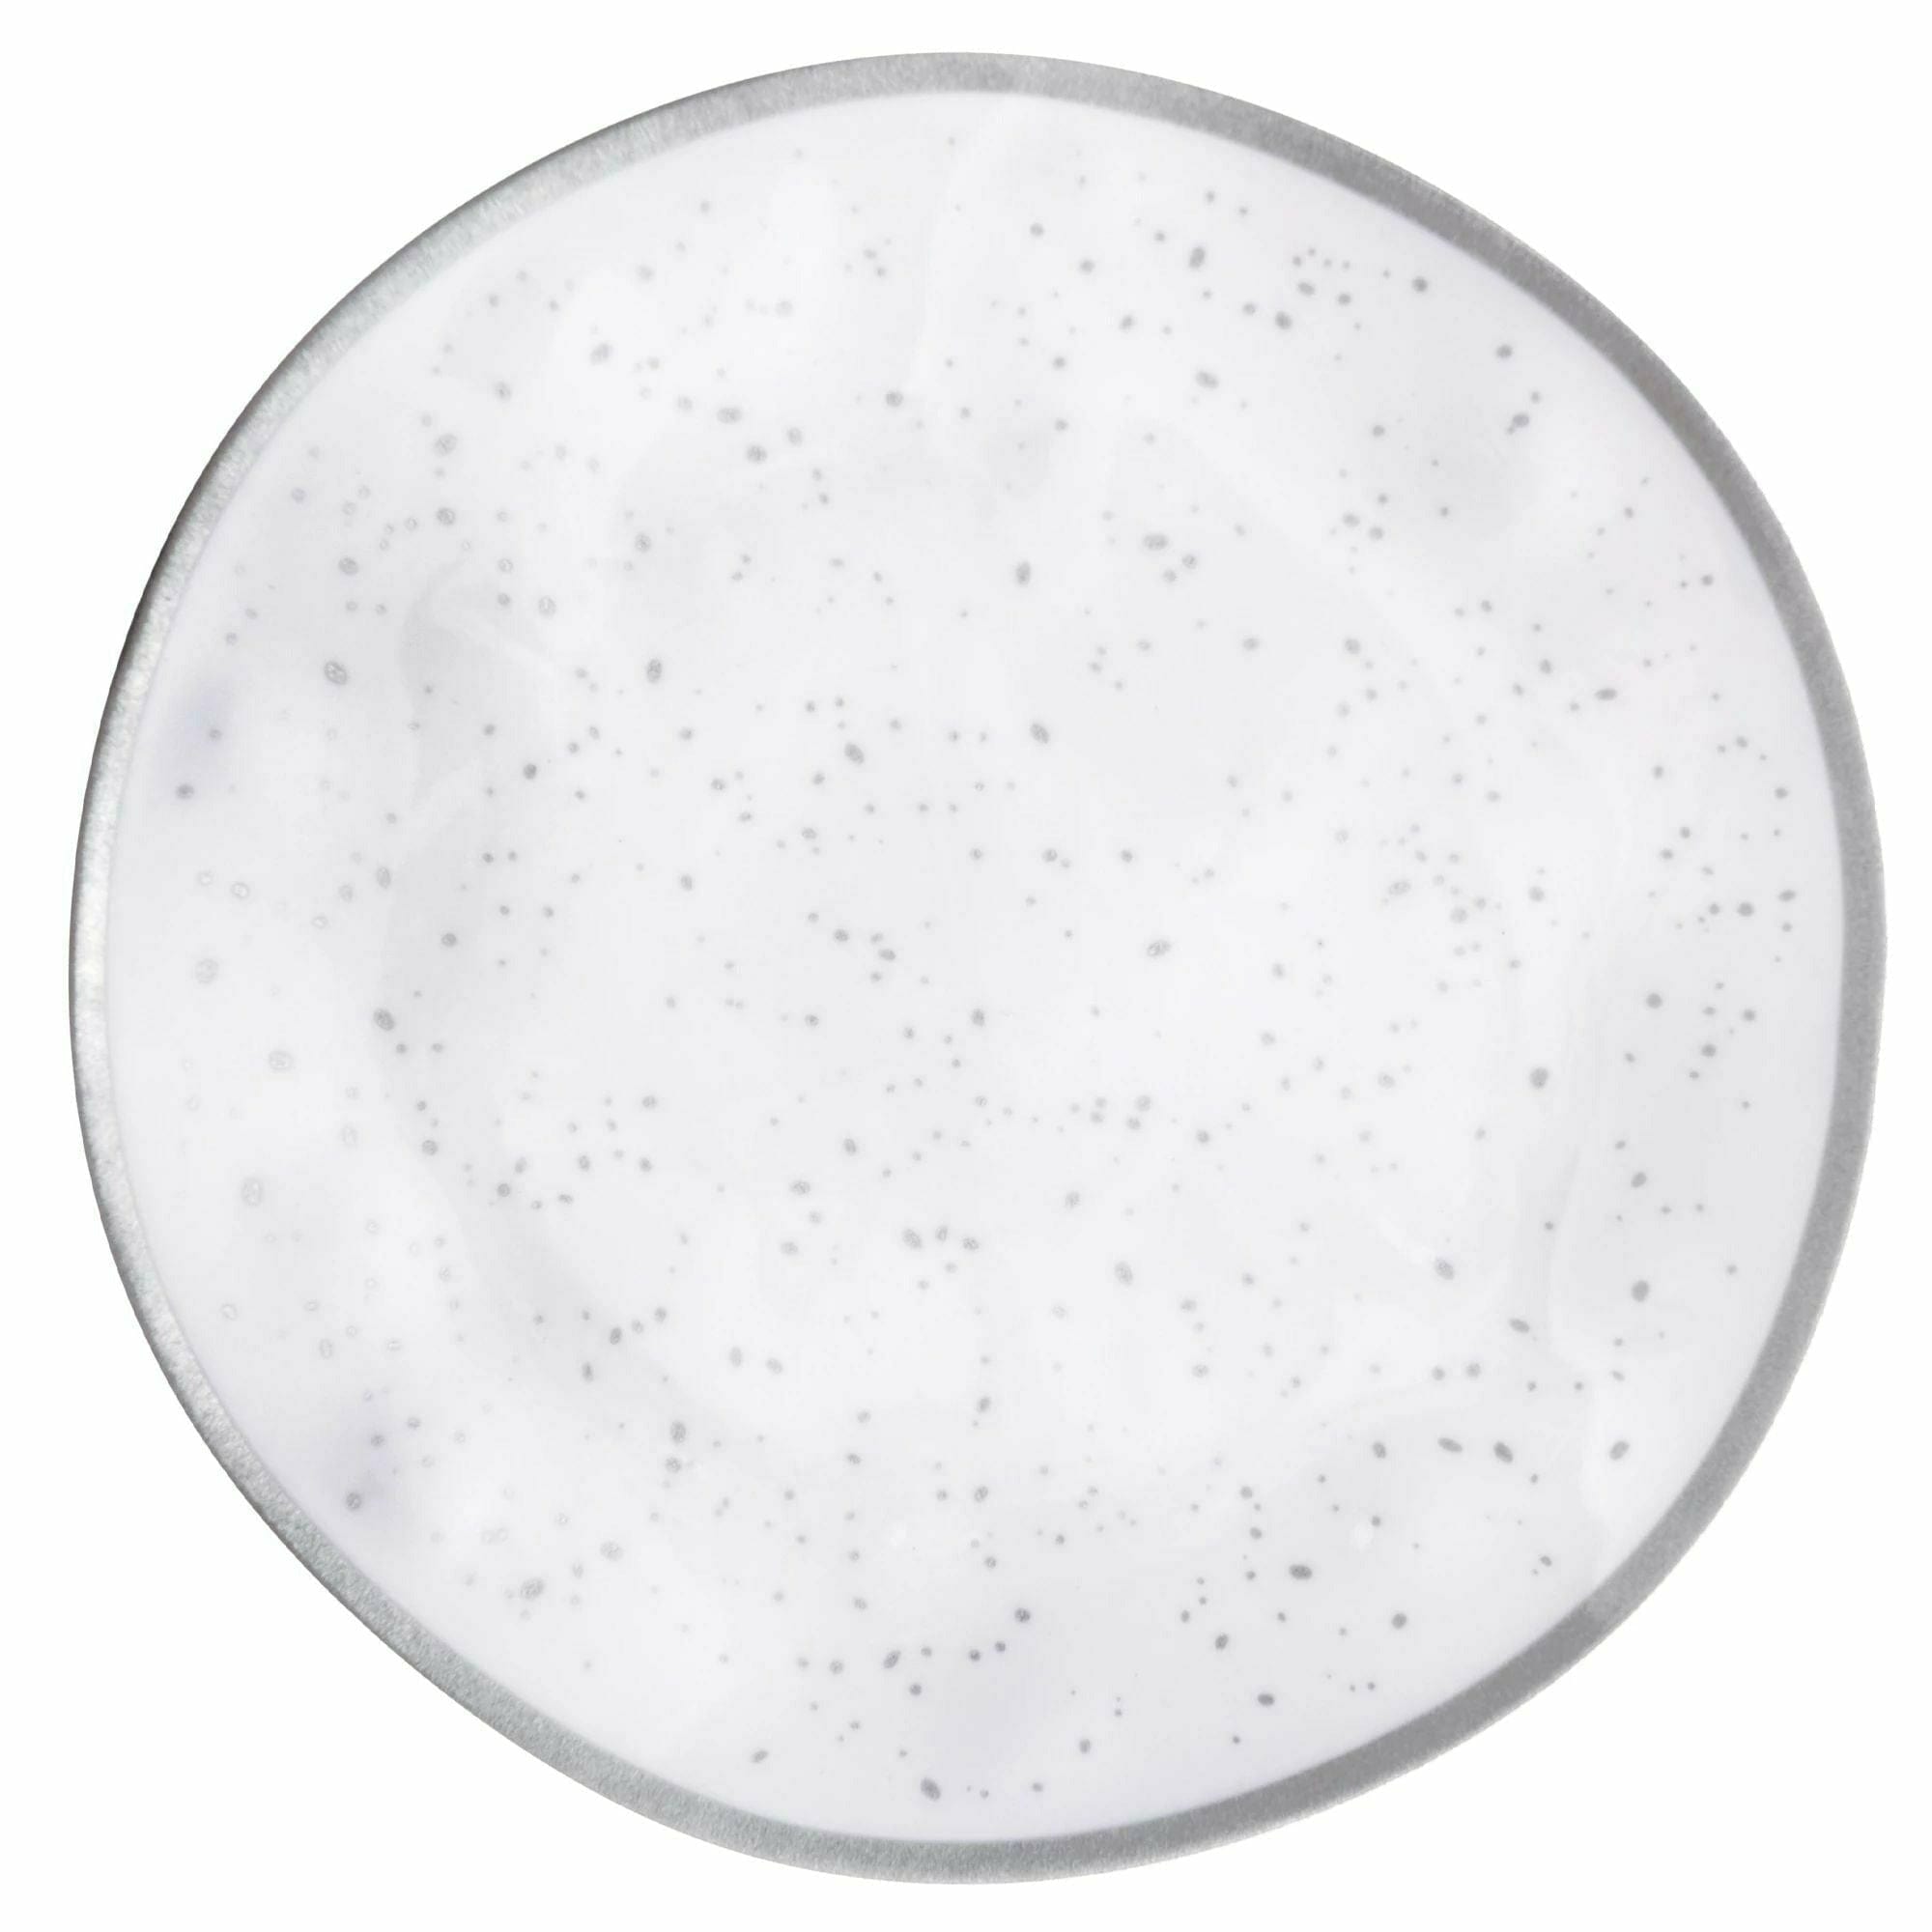 Amscan BASIC Melamine Plastic Plate 10 1/2" - Silver